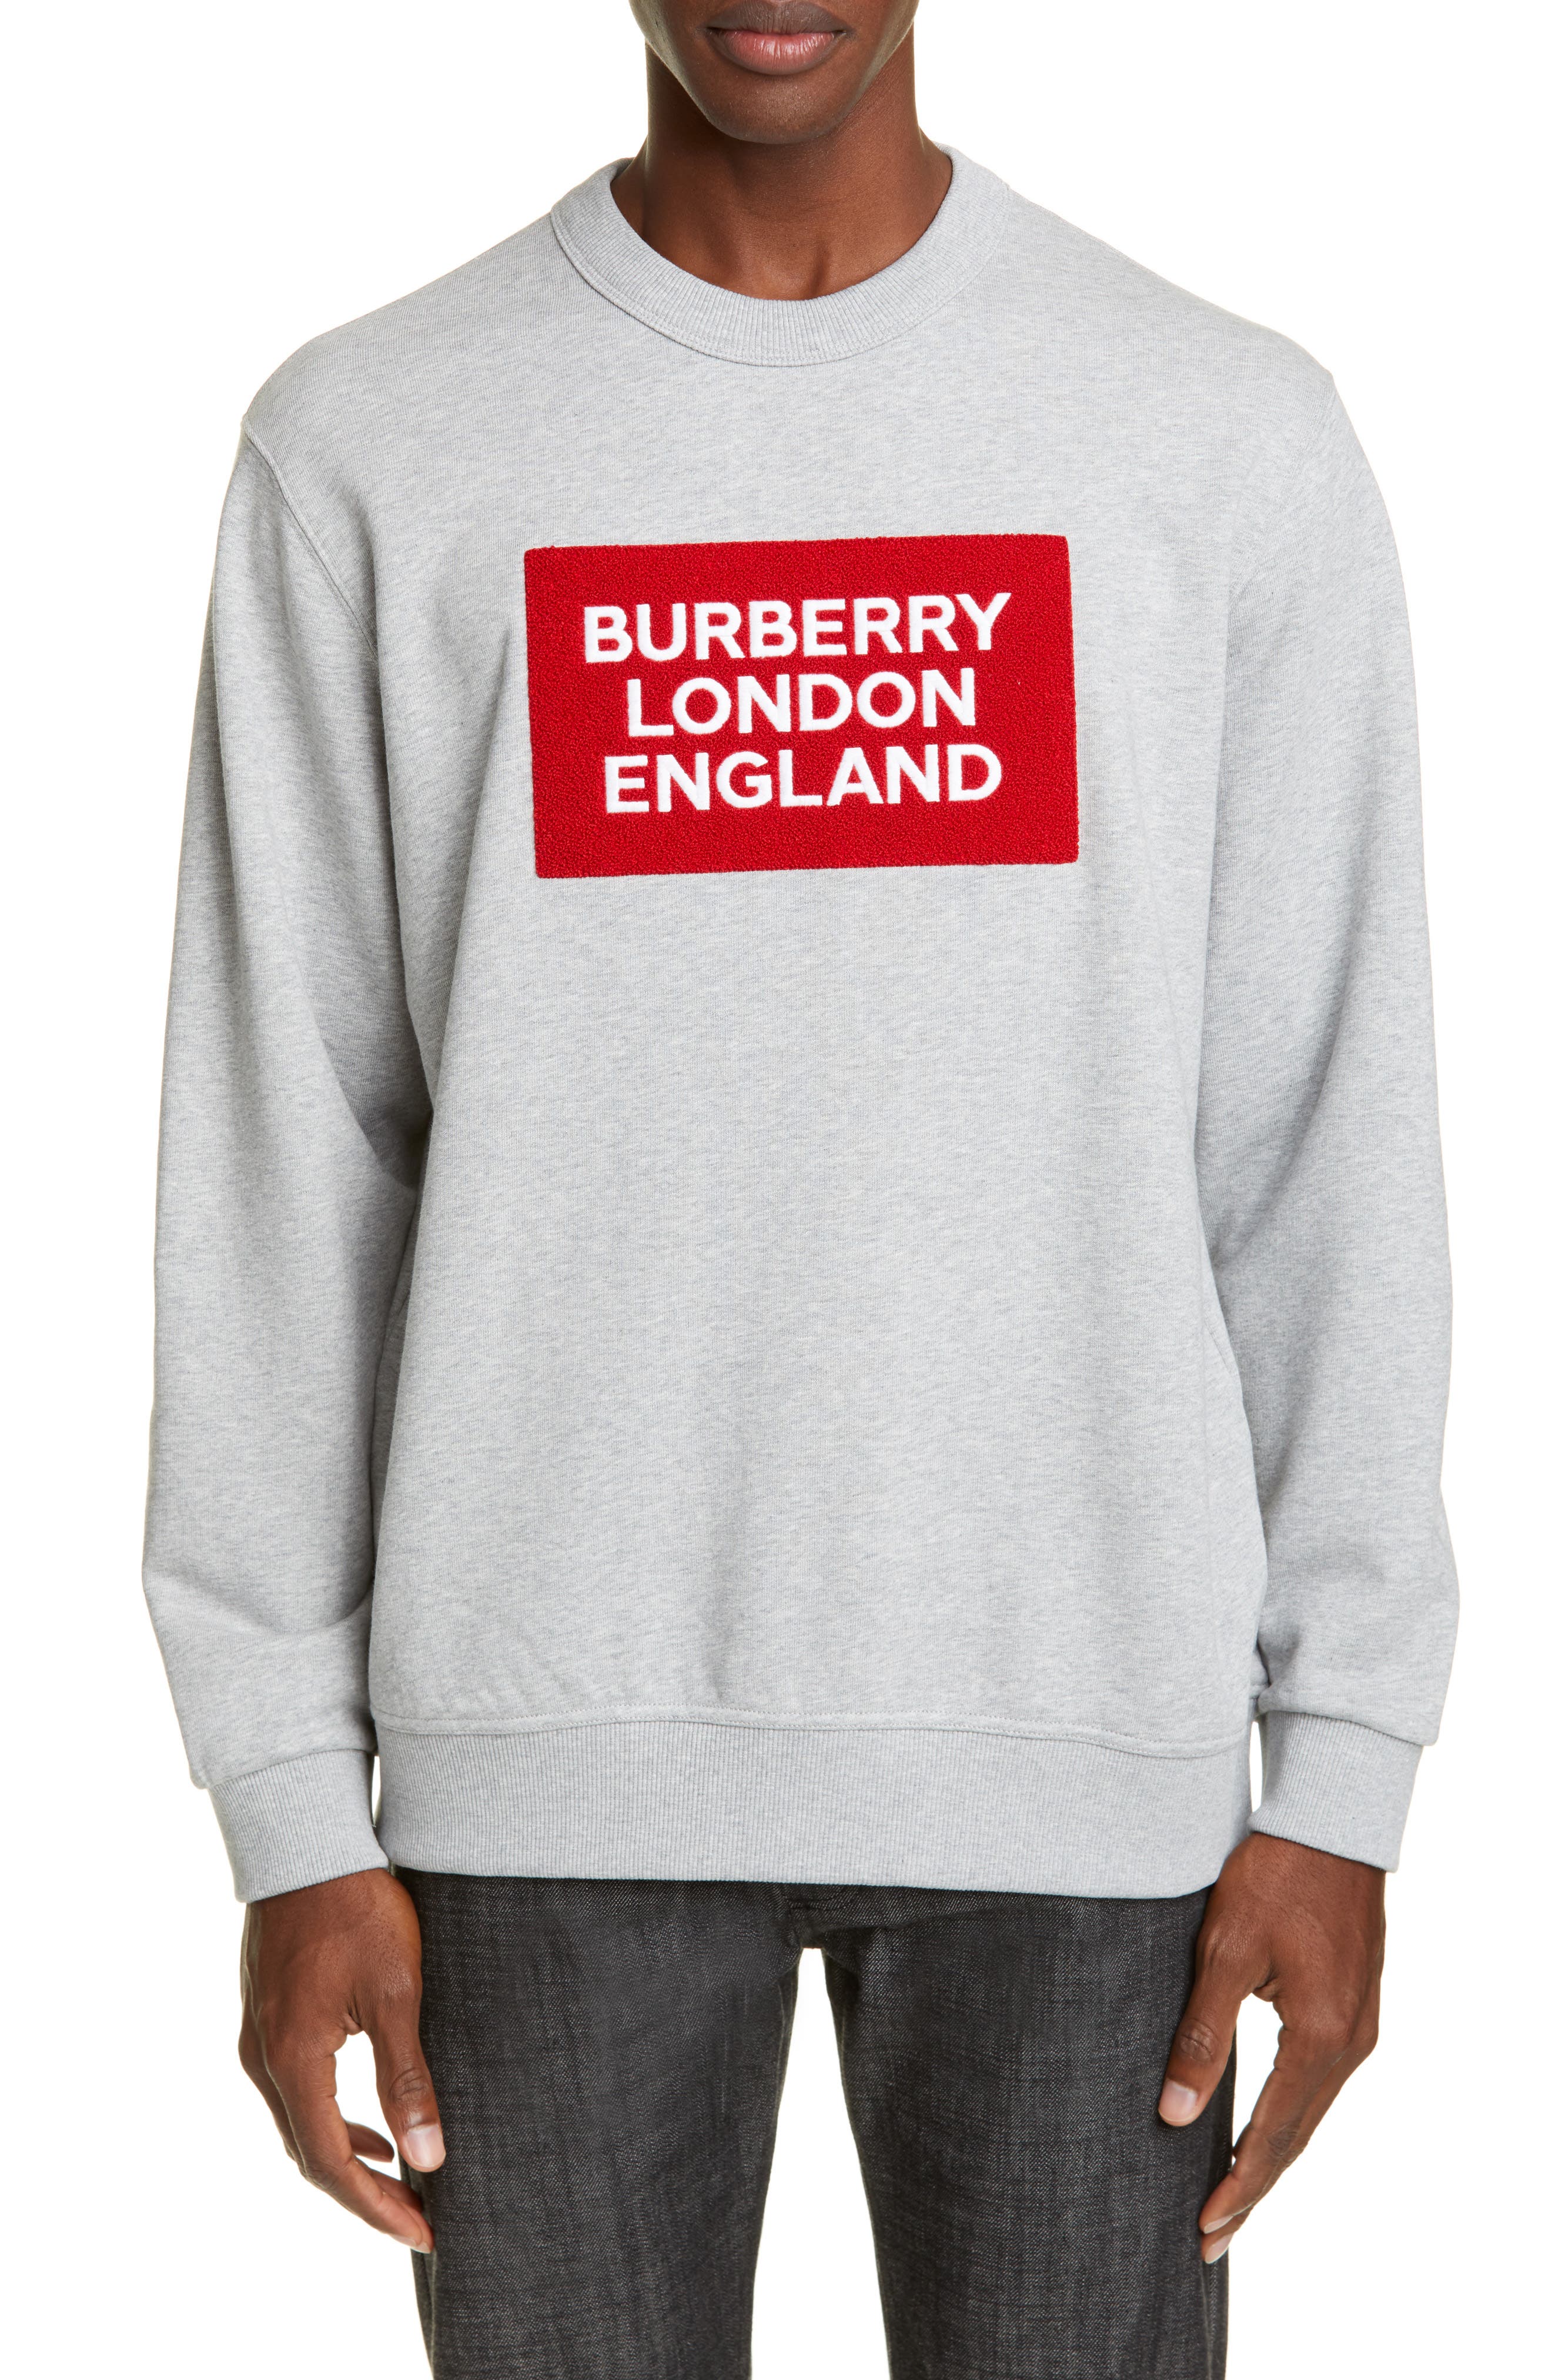 burberry crew neck sweater